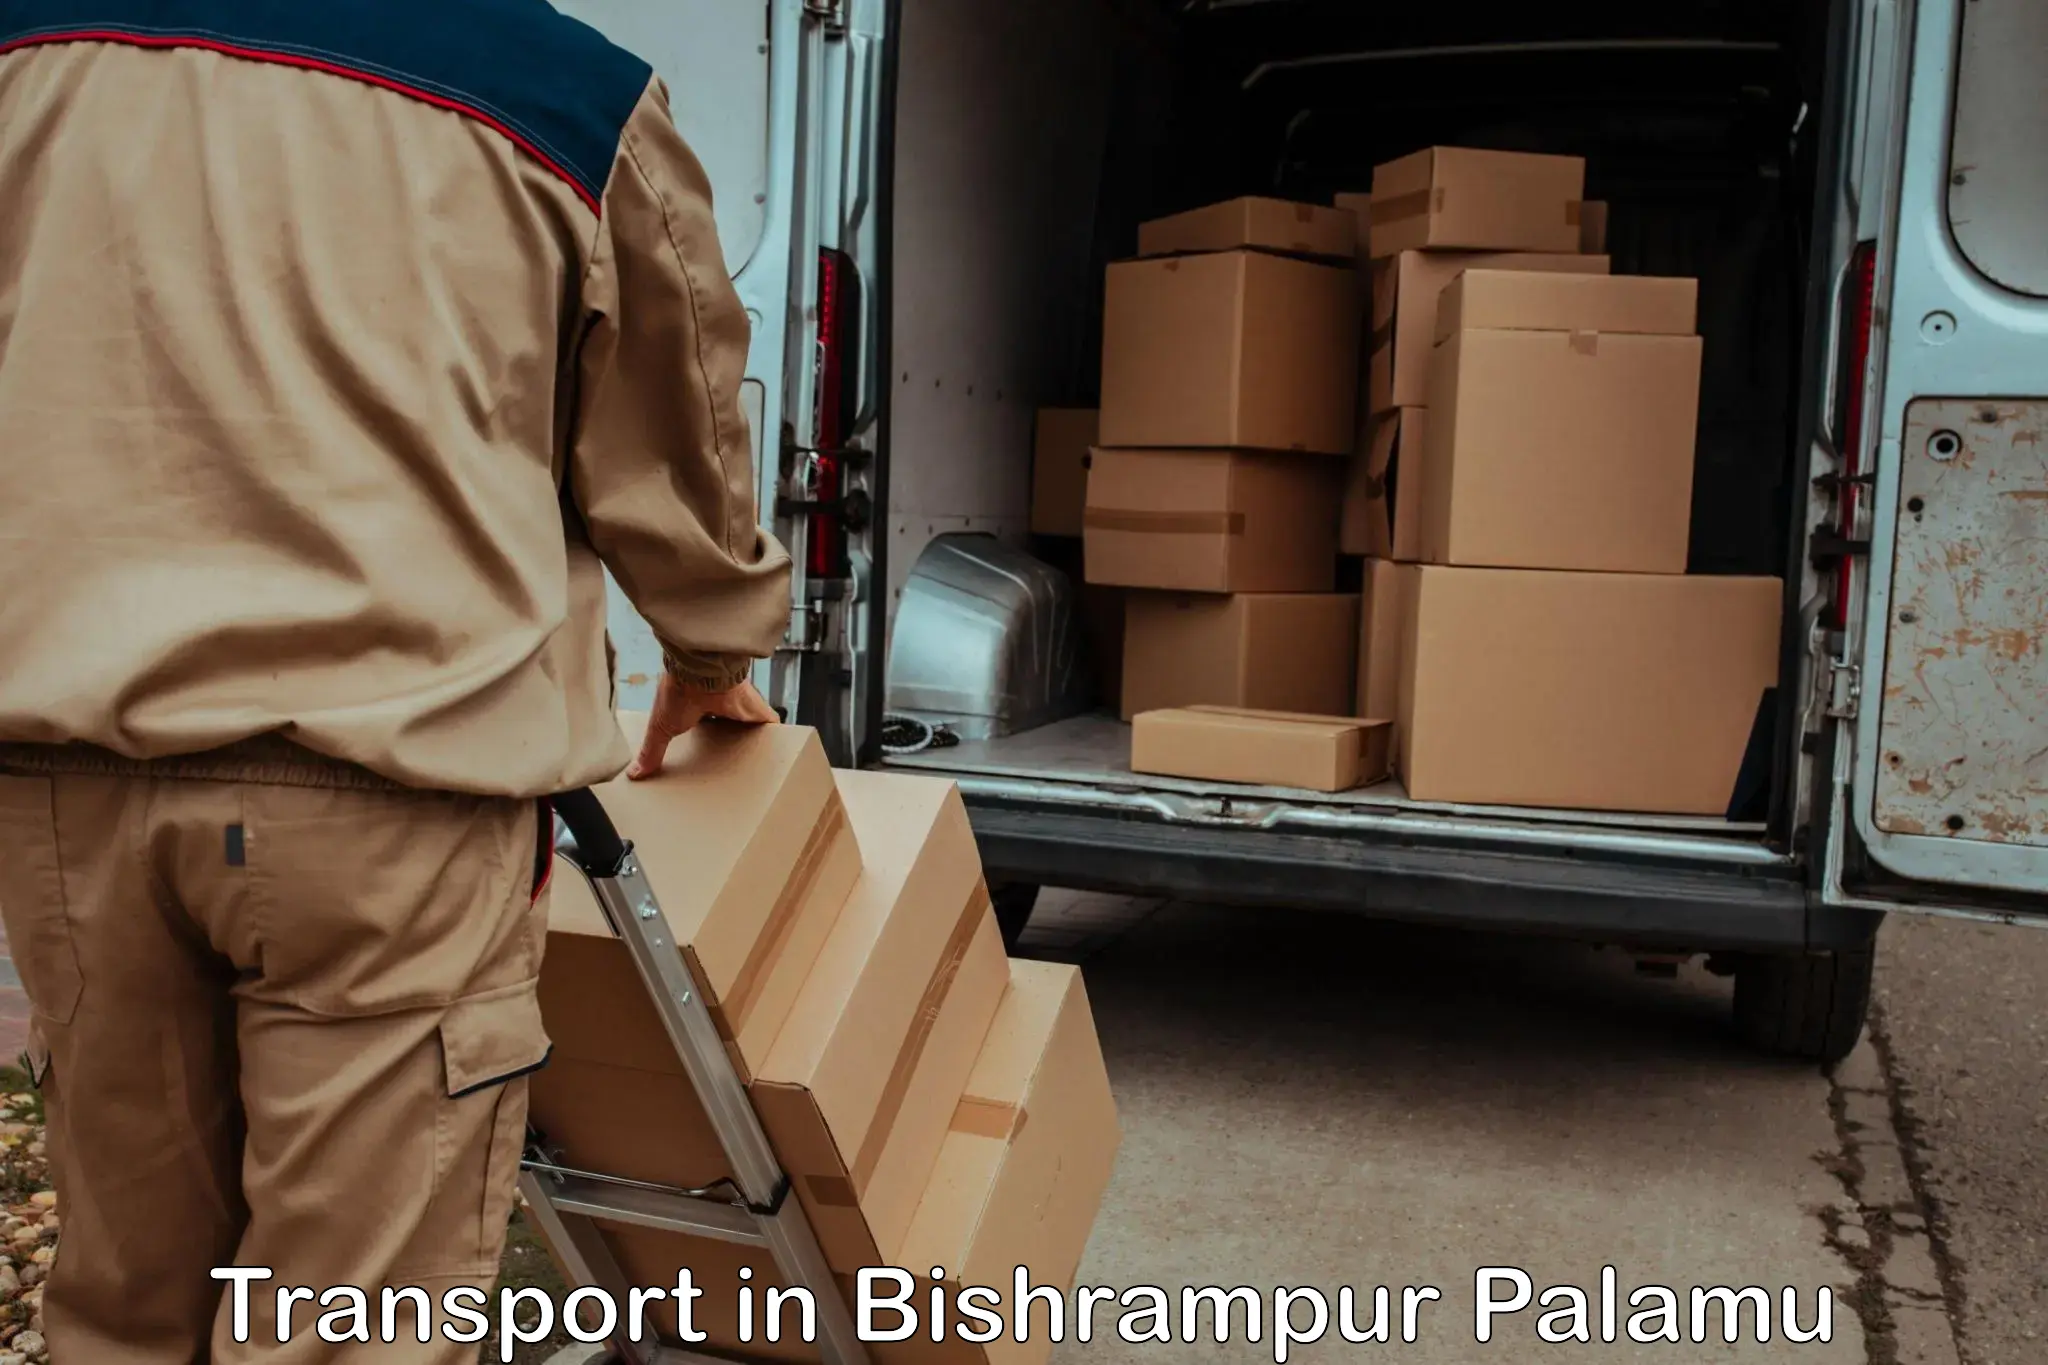 Lorry transport service in Bishrampur Palamu